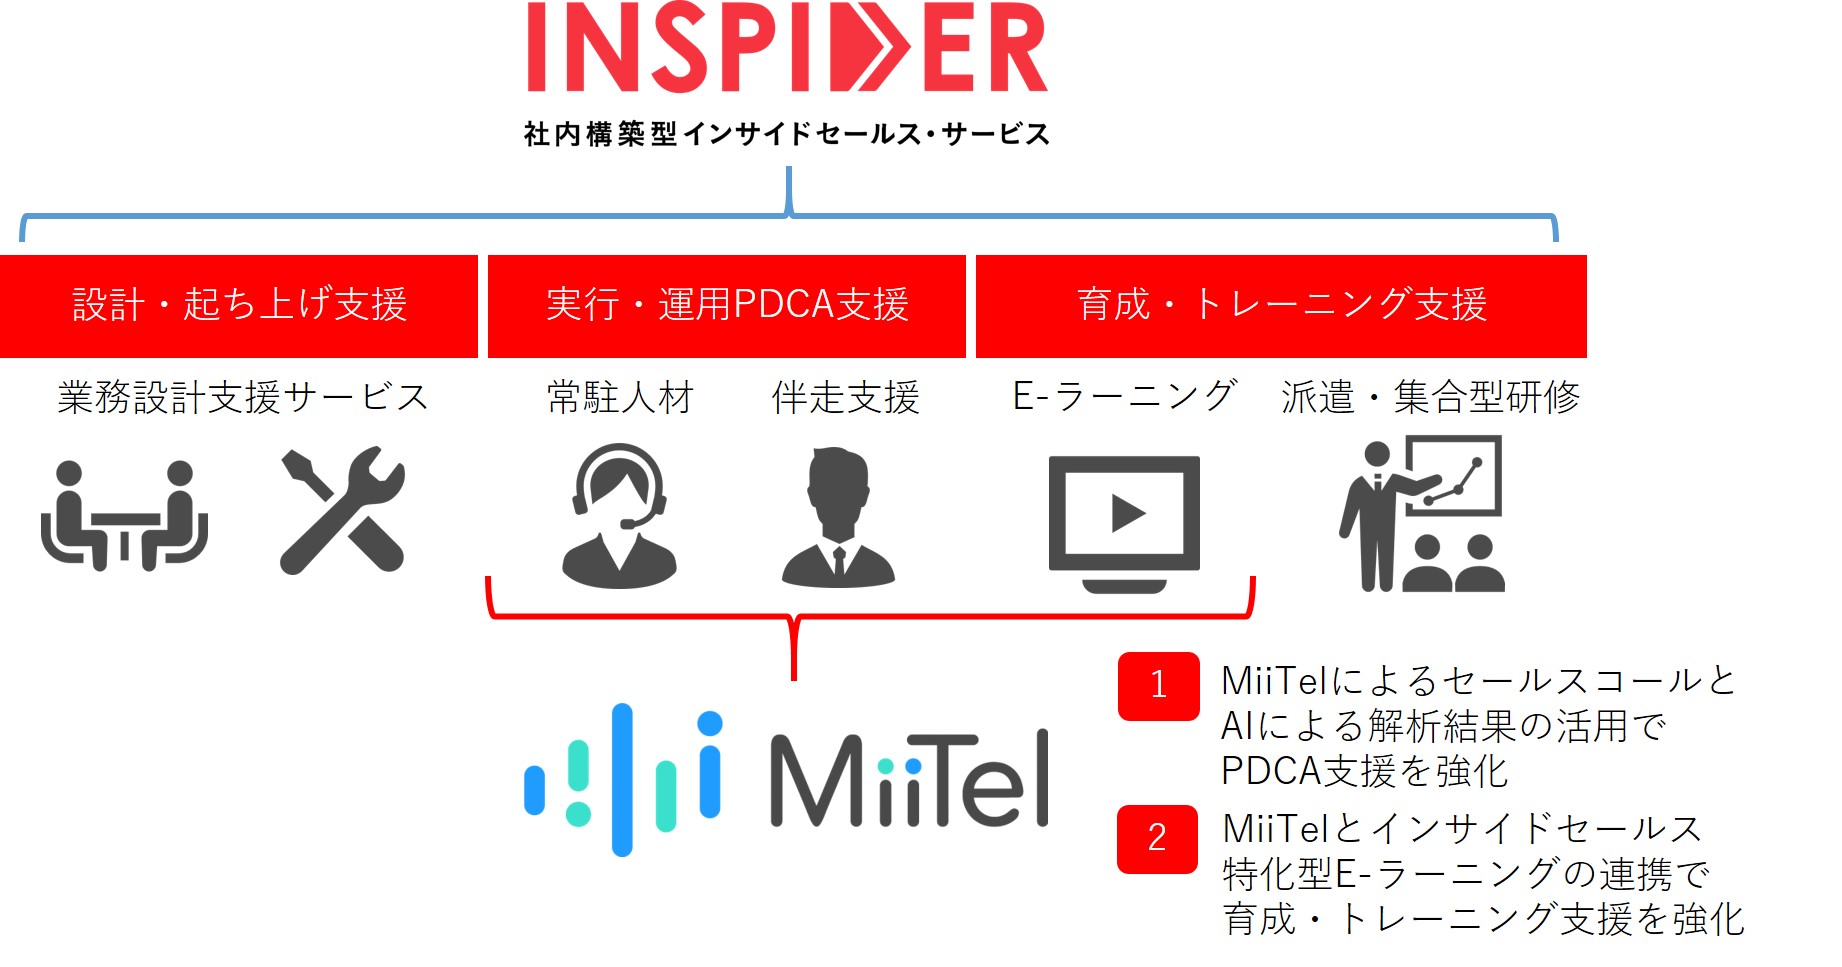 【エムエム総研】インサイドセールス支援サービス"INSPIDER"がAI搭載型クラウドIP電話"MiiTel"と連携